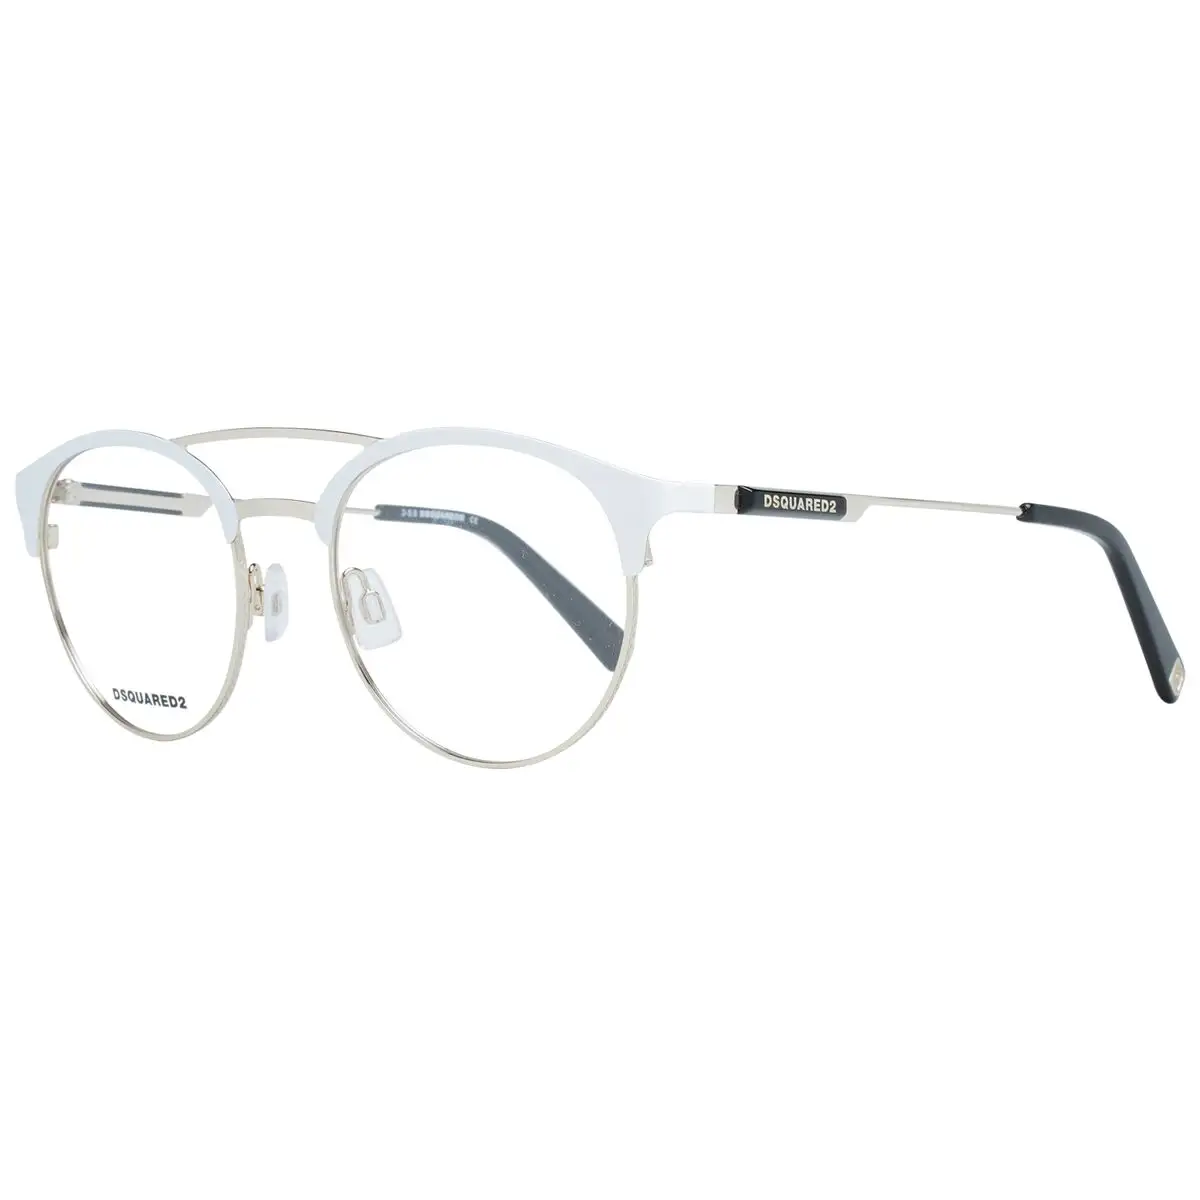 Monture de lunettes homme dsquared2 dq5284 51021_5095. DIAYTAR SENEGAL - Là où Choisir est une Affirmation de Style. Naviguez à travers notre boutique en ligne et choisissez des produits qui vous distinguent et vous valorisent.